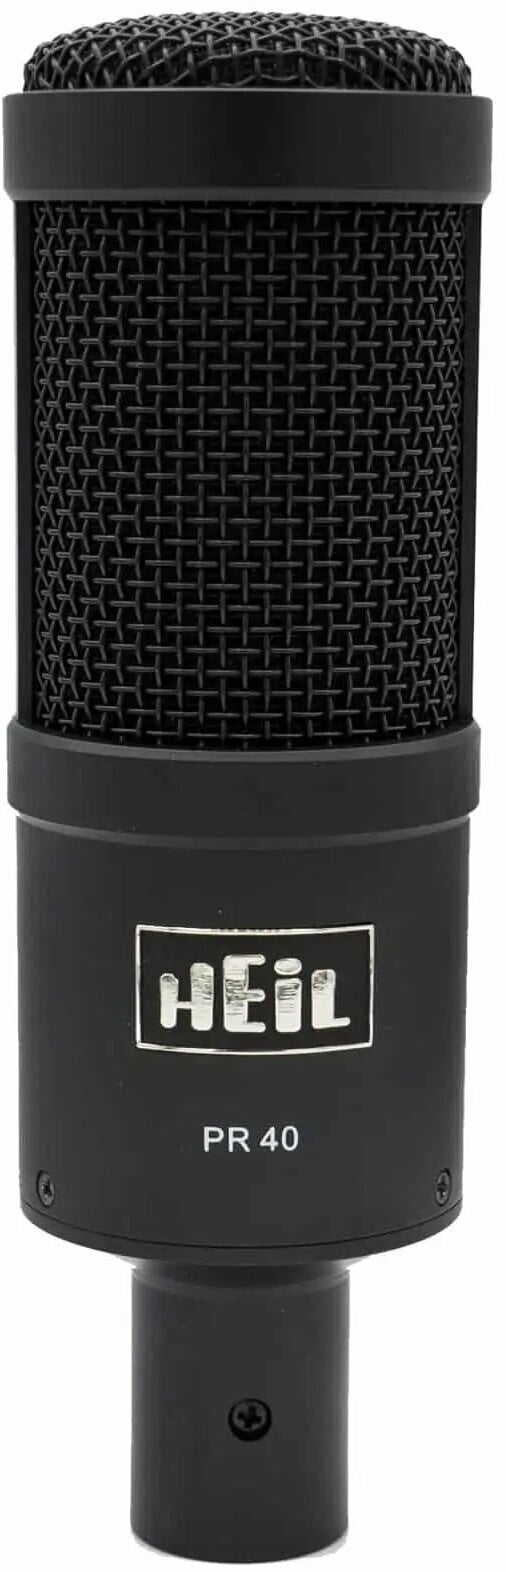 Heil Sound PR40 Black